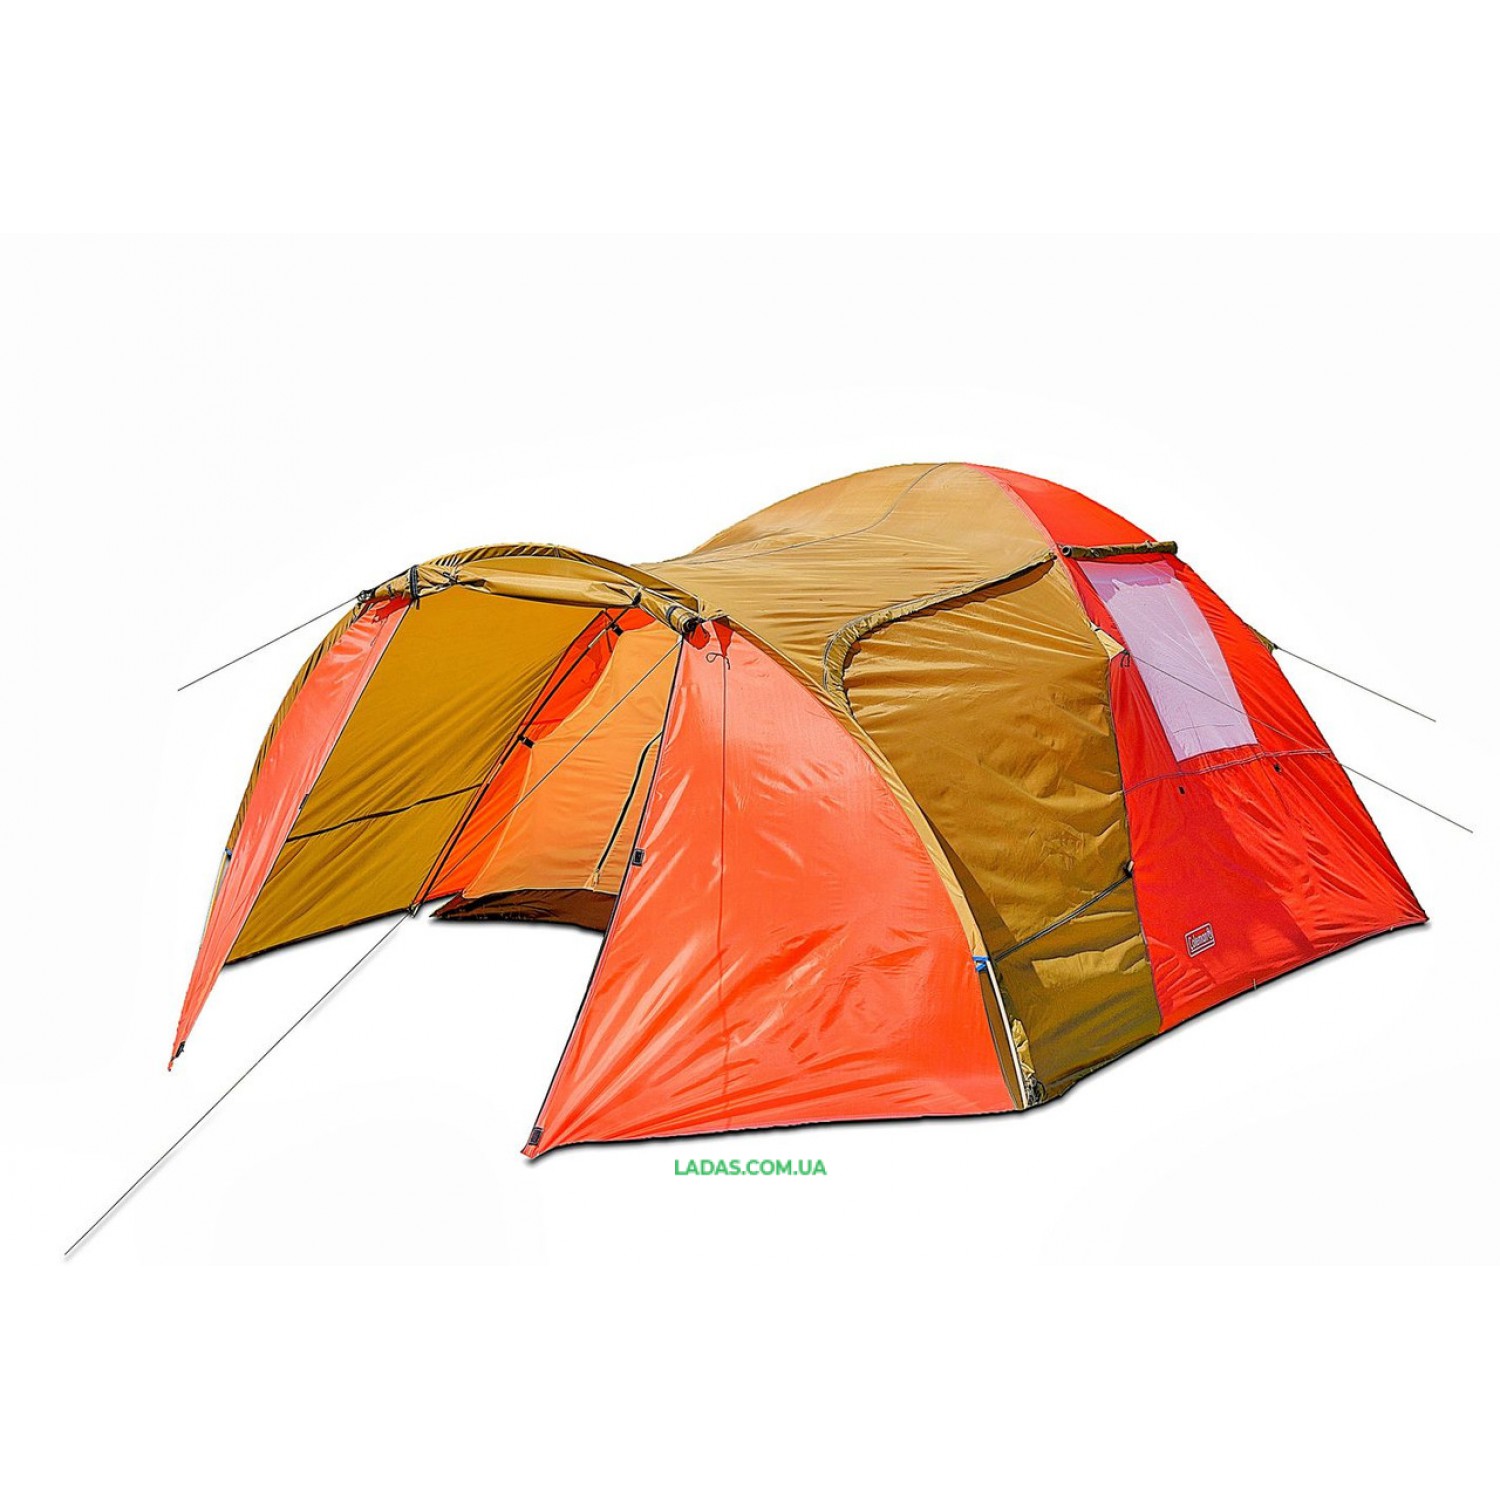 Четырехместная палатка Coleman 1036 (Польша)